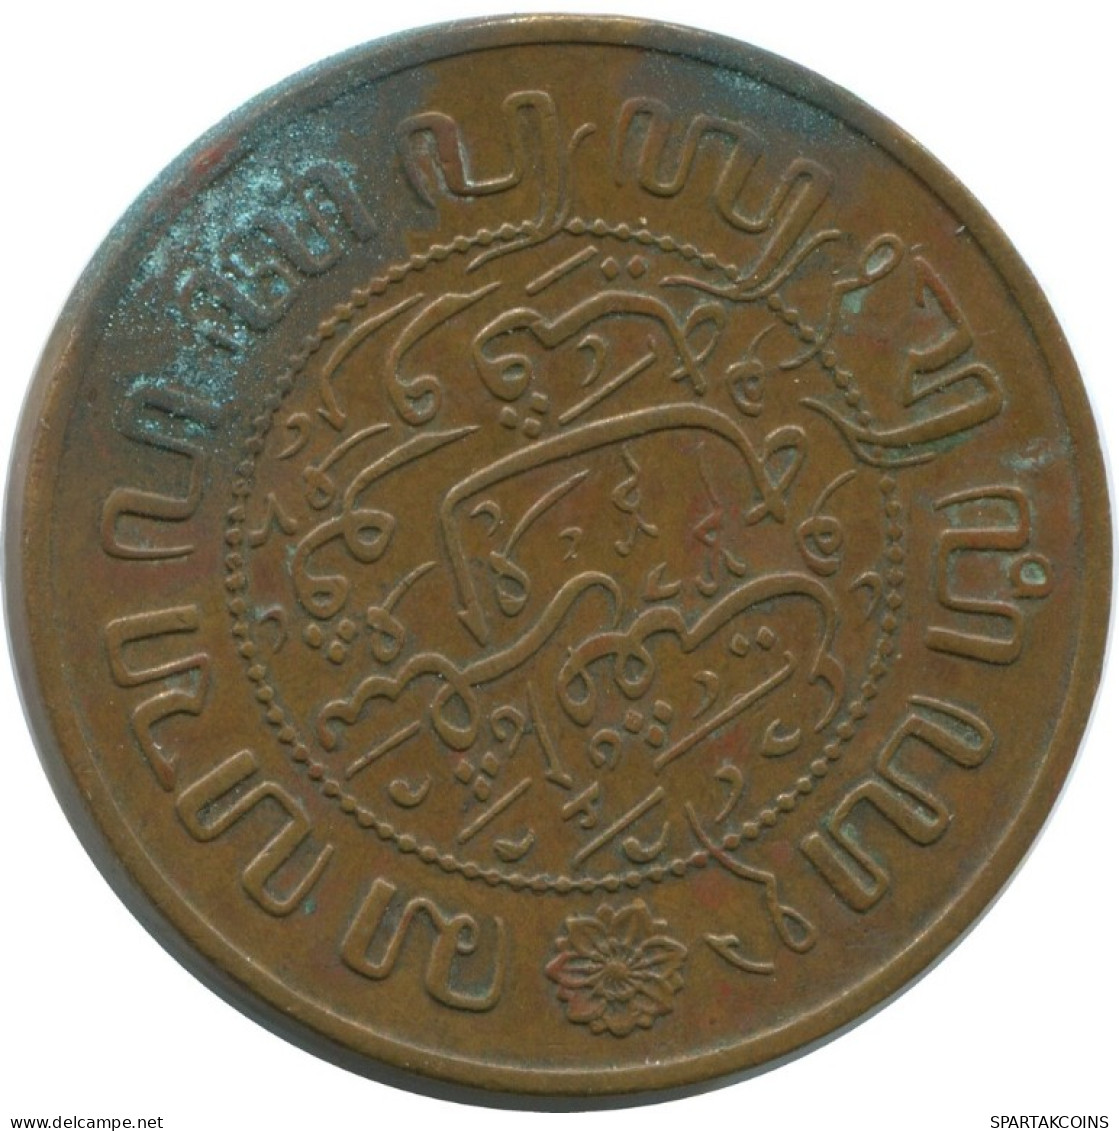 1945 2 1/2 CENT INDIAS ORIENTALES DE LOS PAÍSES BAJOS #AE857.27.E.A - Dutch East Indies